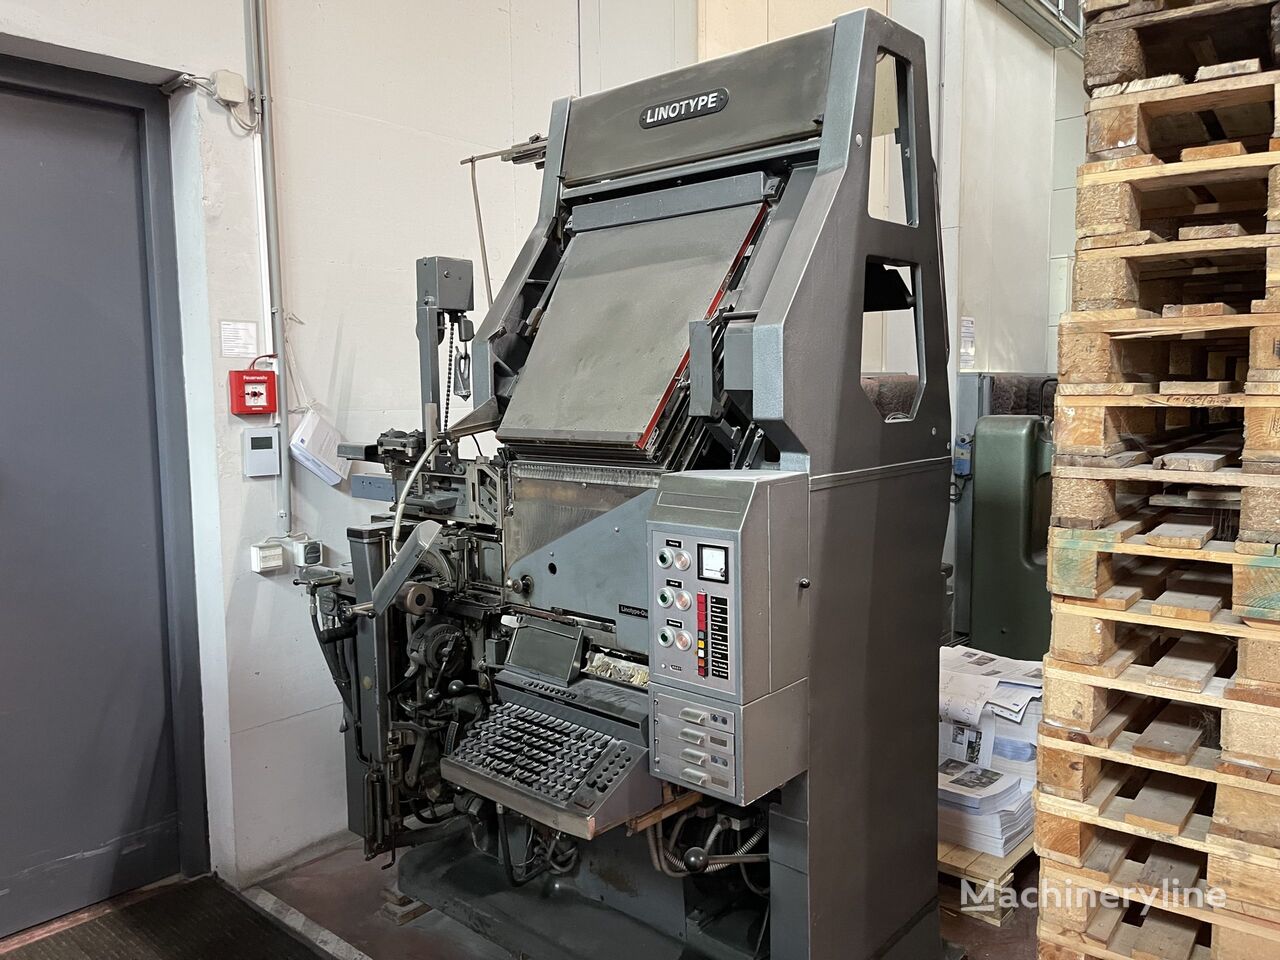 Linotype 280 linotype machine